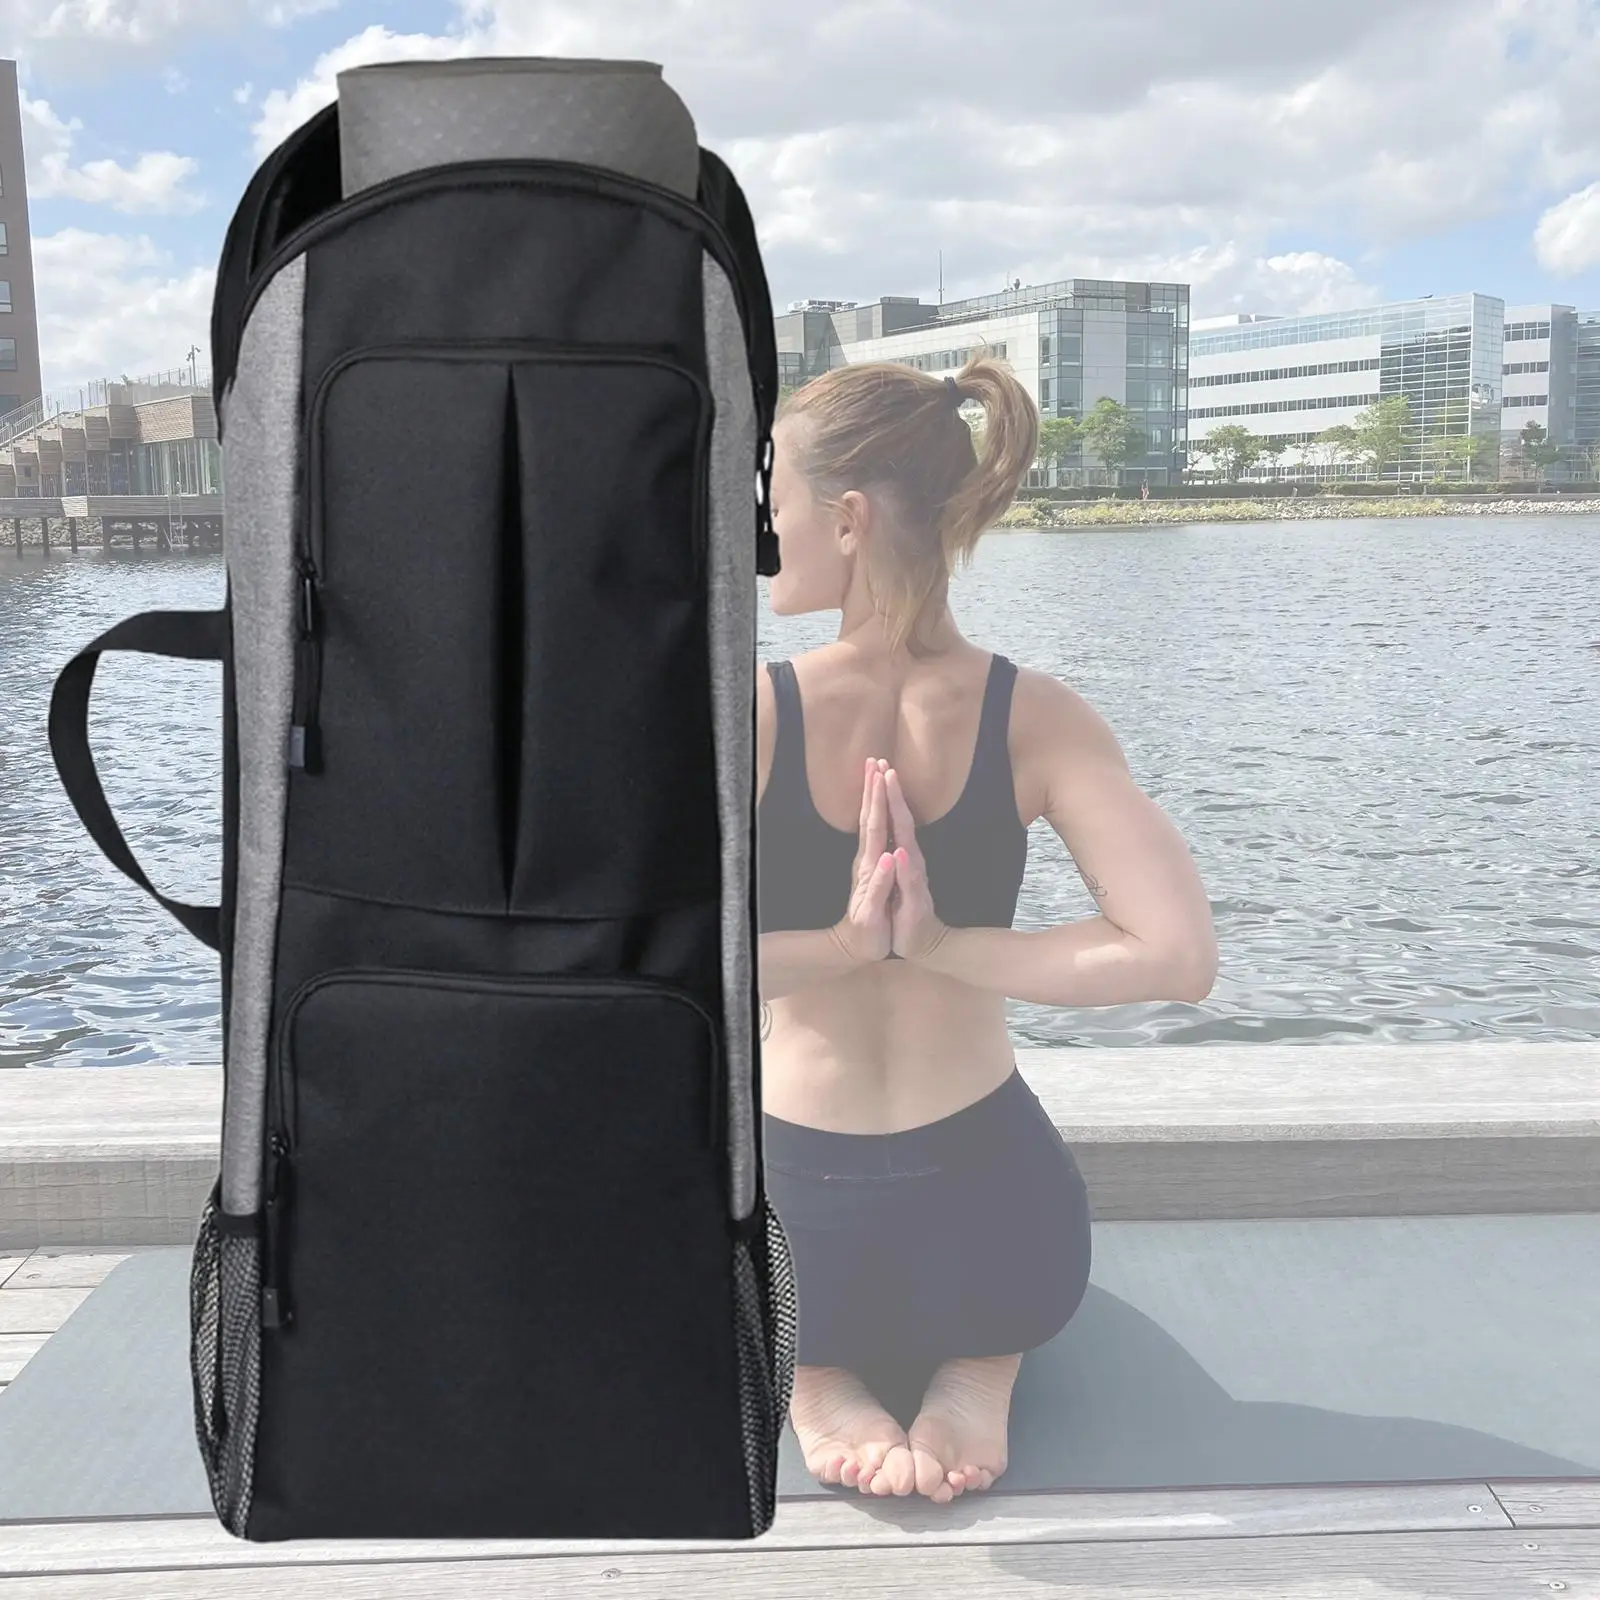 Lightweight Gym Bag Sports Duffel Bag with Adjustable Shoulder Strap Women Men Handbag Large for Camping Workout Swimming Yoga